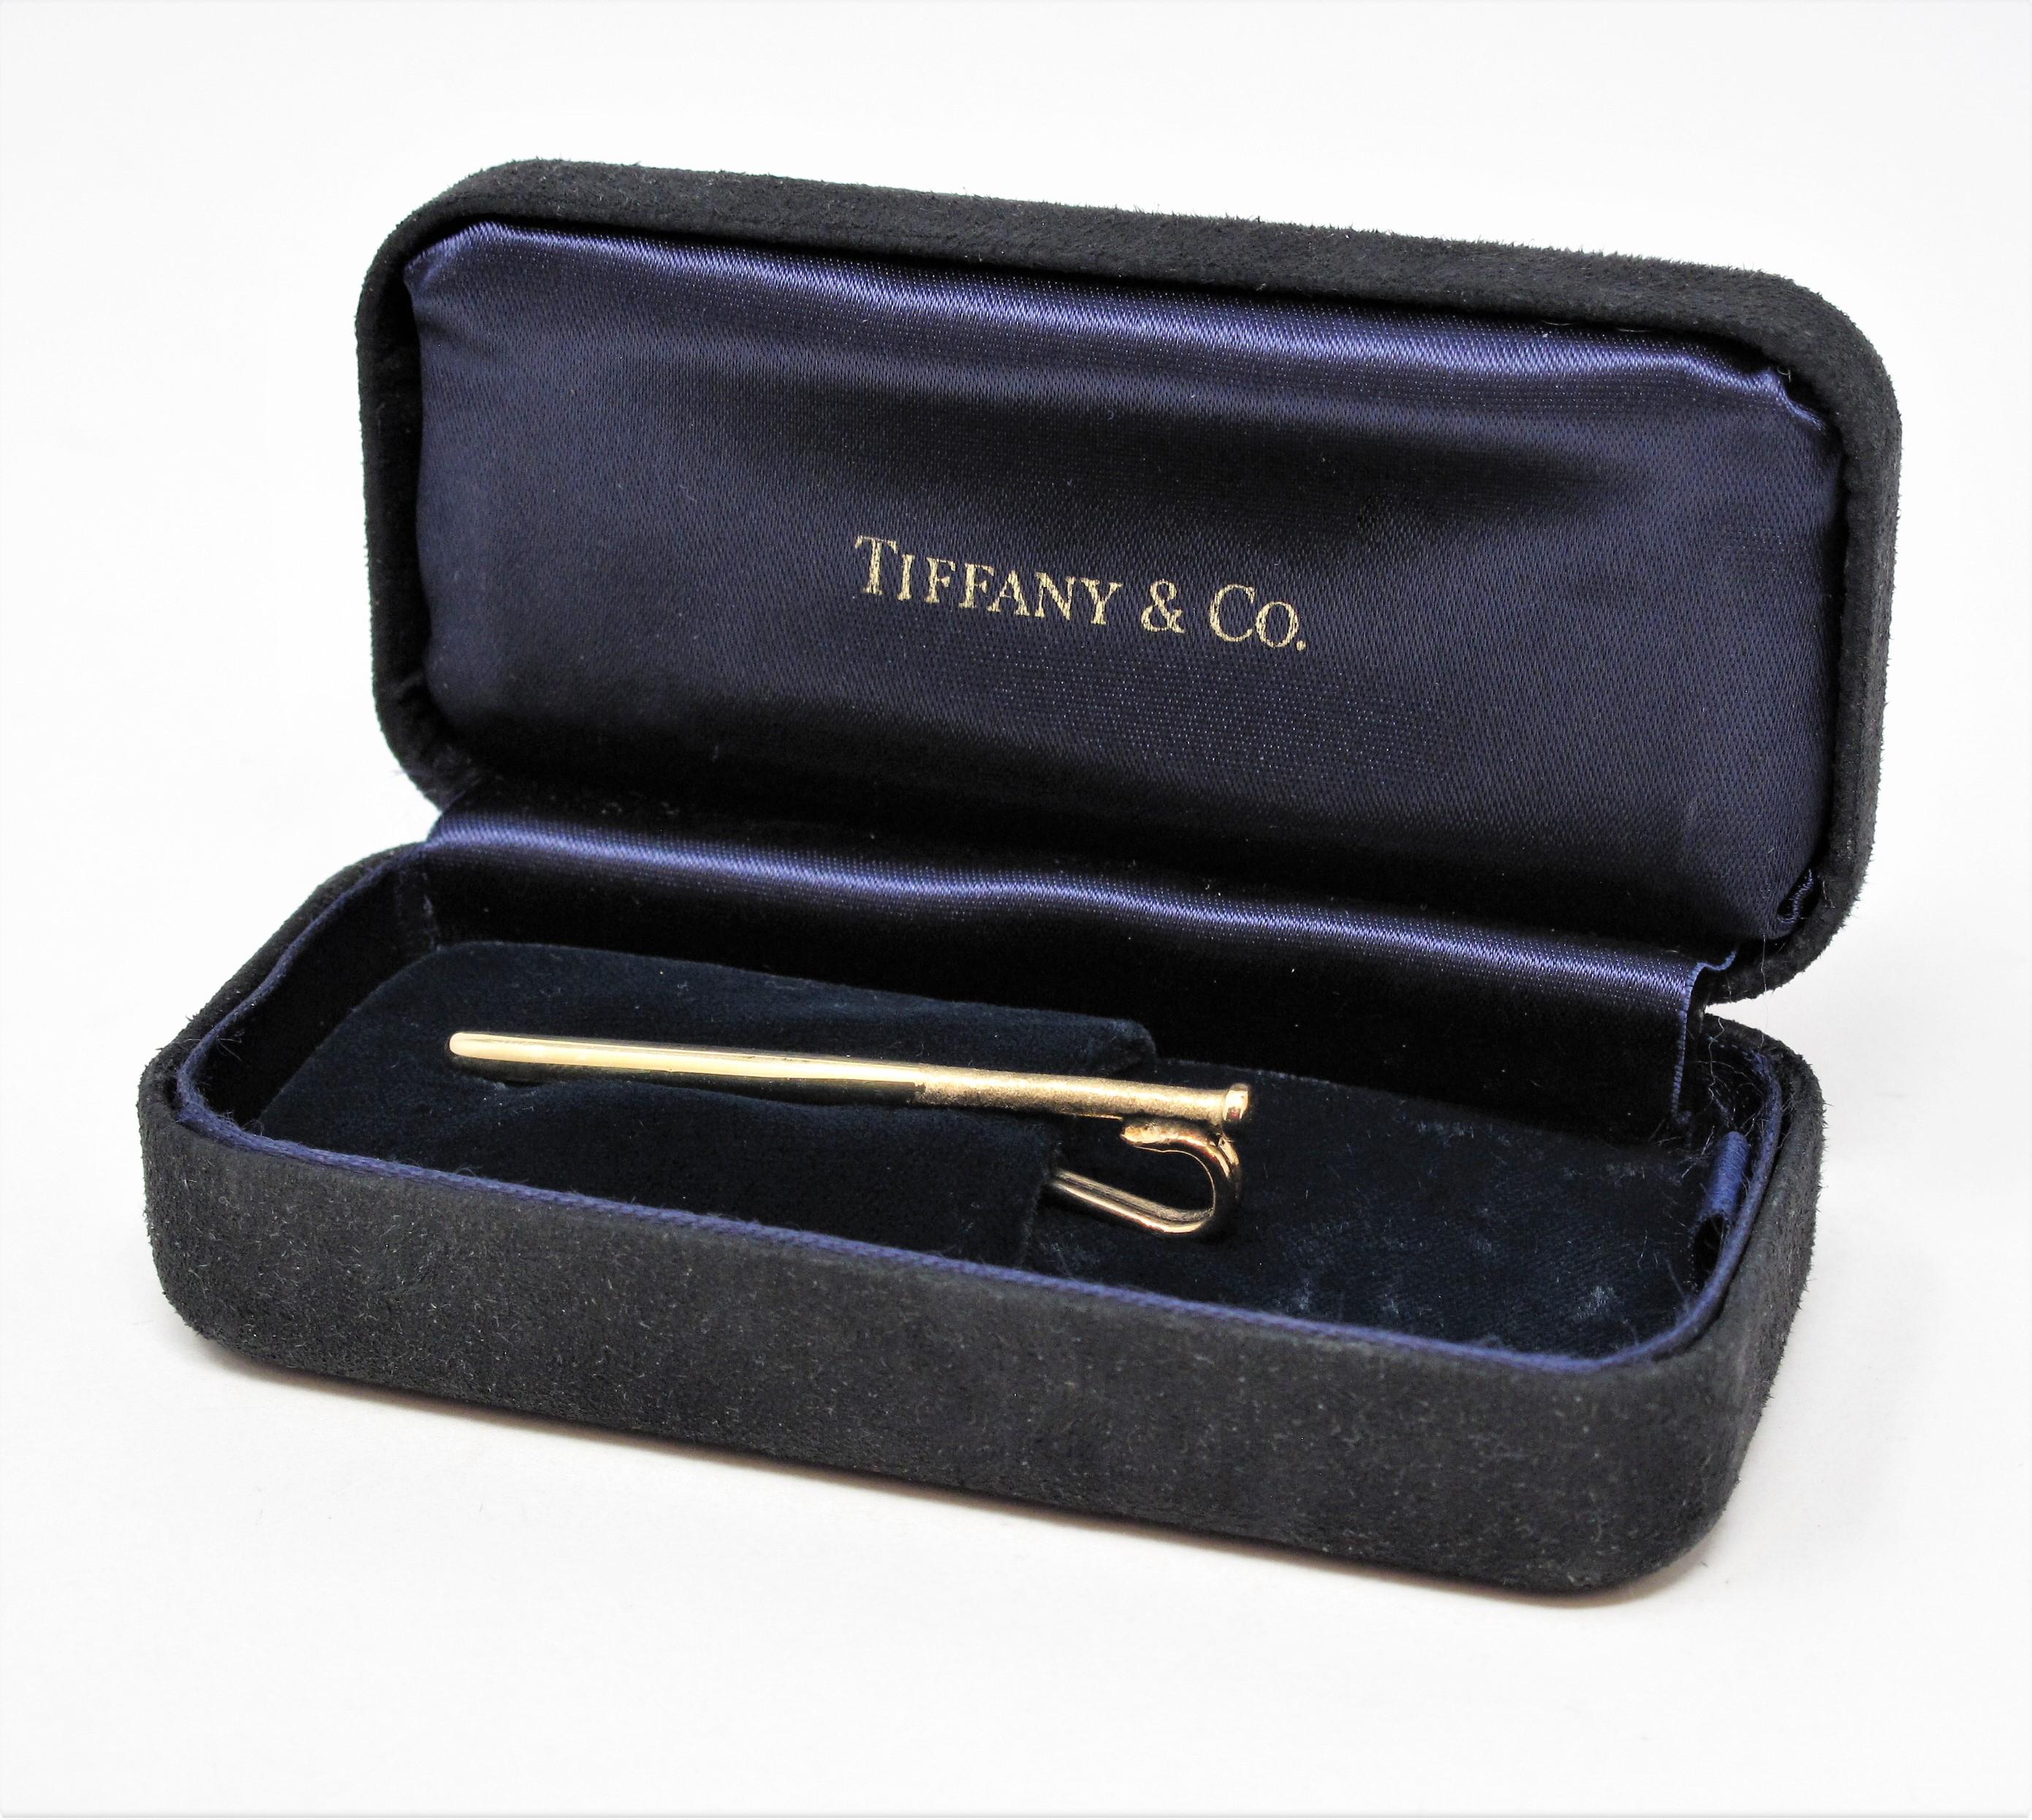 Rare pince à billets / pince à cravate vintage Tiffany & Co. en or jaune 14 carats. Cette pièce élégante et polyvalente est parfaite pour l'amateur de sport dans votre vie !

Cet article unique de Tiffany & Co. présente un motif allongé de batte de